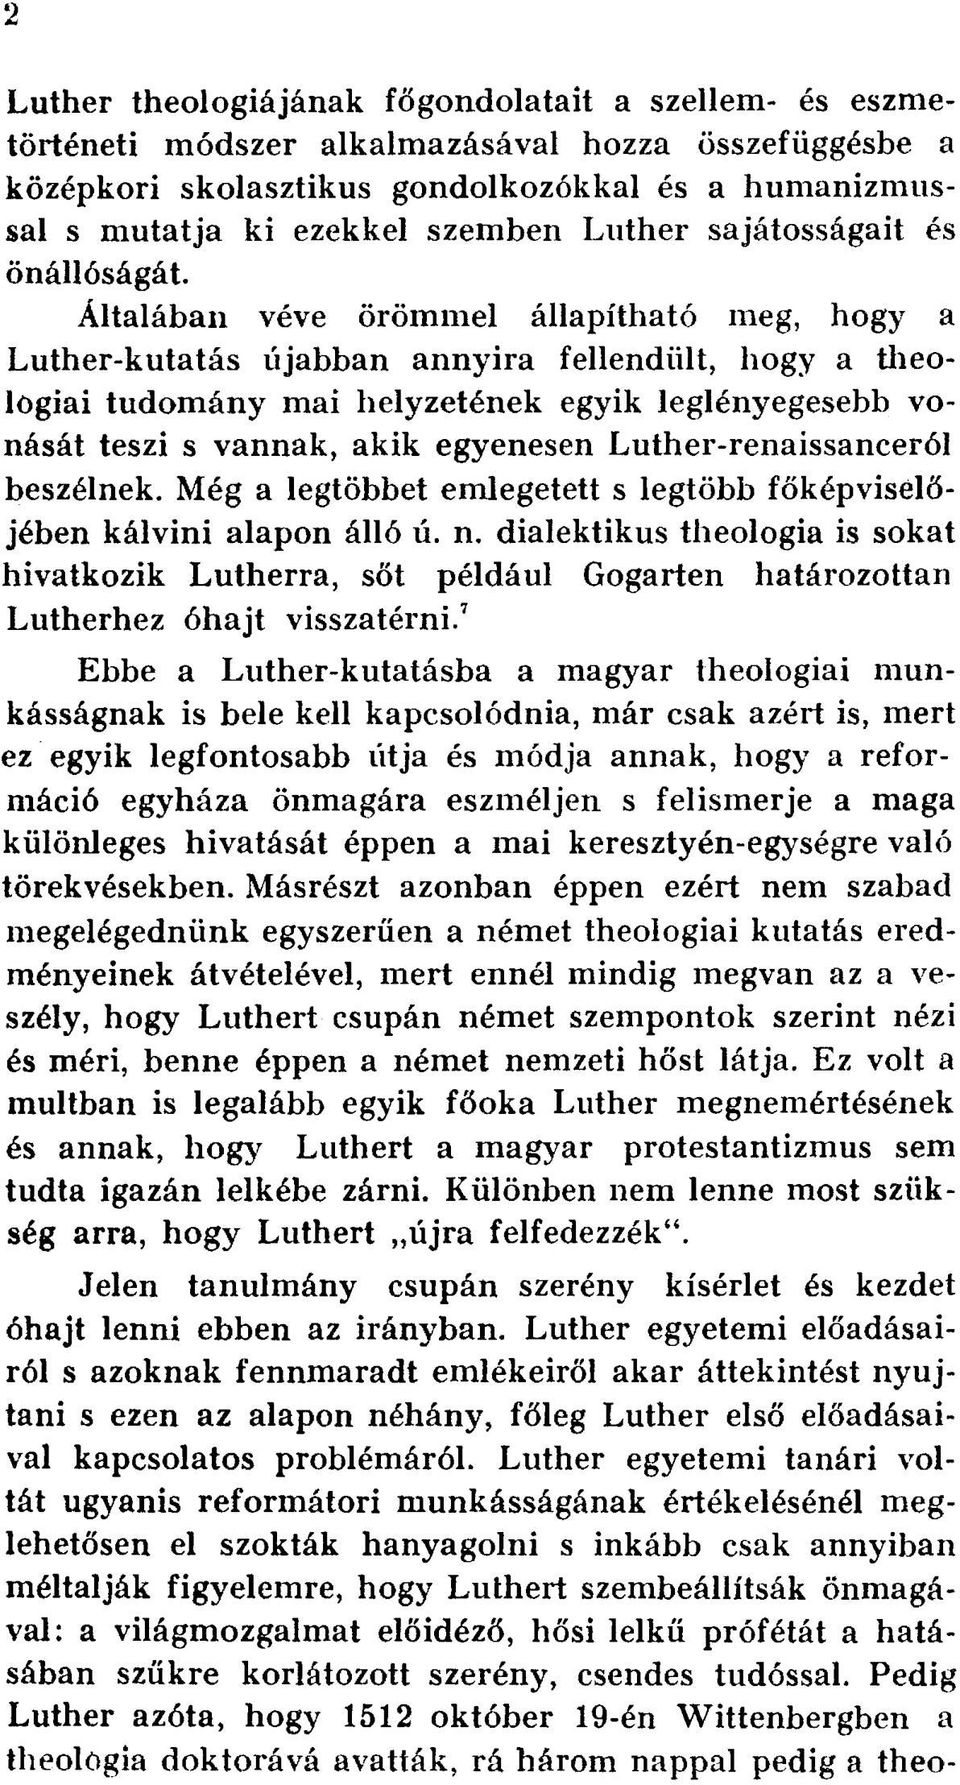 Általában véve örömmel állapítható meg, hogy a Luther-kutatás újabban annyira fellendült, hogy a theologiai tudomány mai helyzetének egyik leglényegesebb vonását teszi s vannak, akik egyenesen